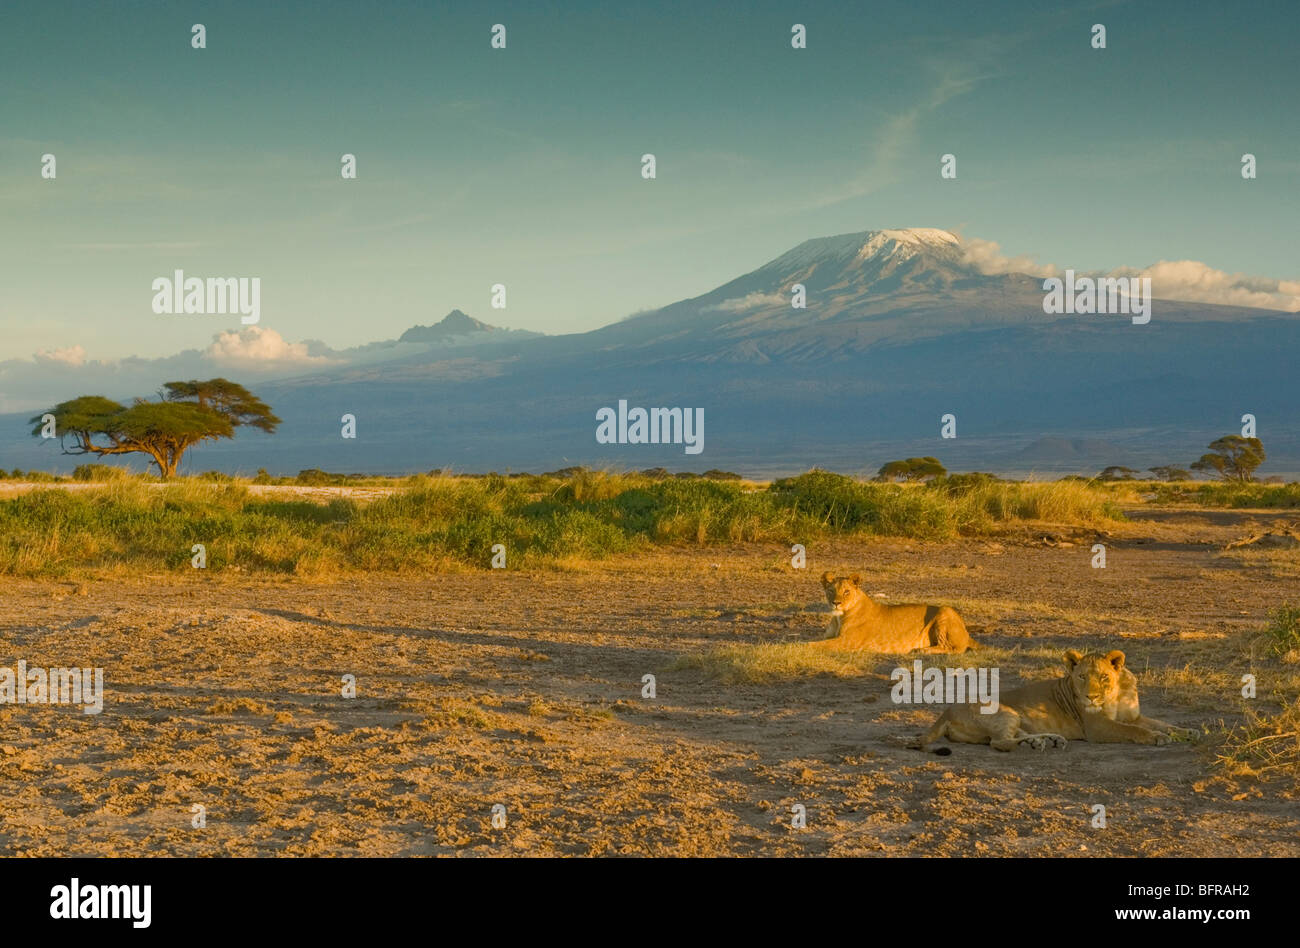 Deux jeunes lions (Panthera leo) se trouvant sur la plaine d'Amboseli sur fond de sommets enneigés du Kilimandjaro Banque D'Images